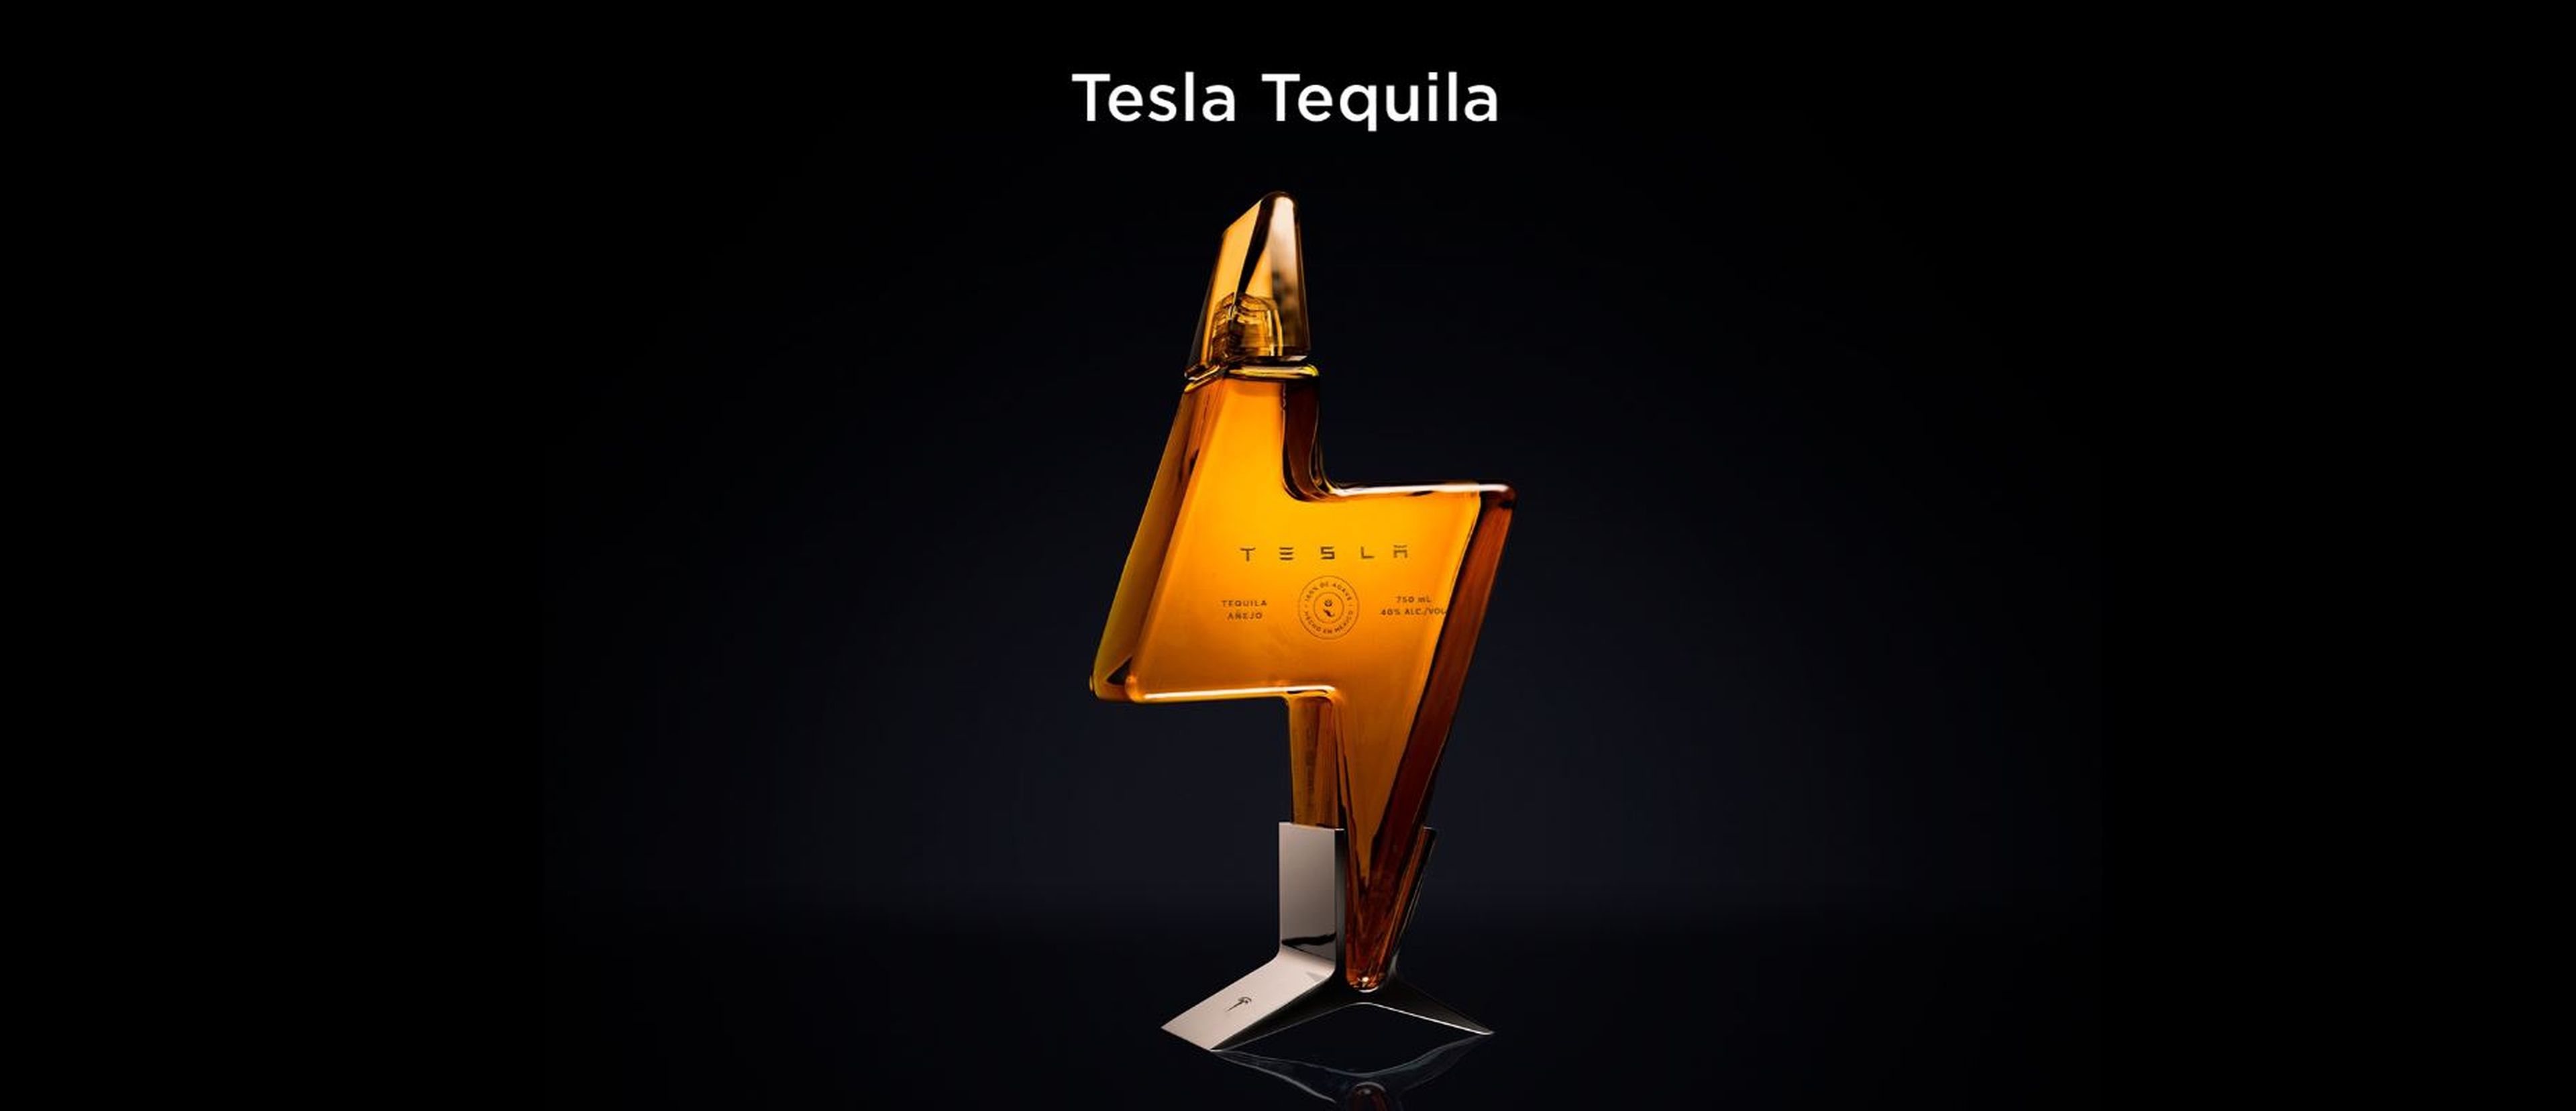 El tequila de Tesla, Teslaquila.